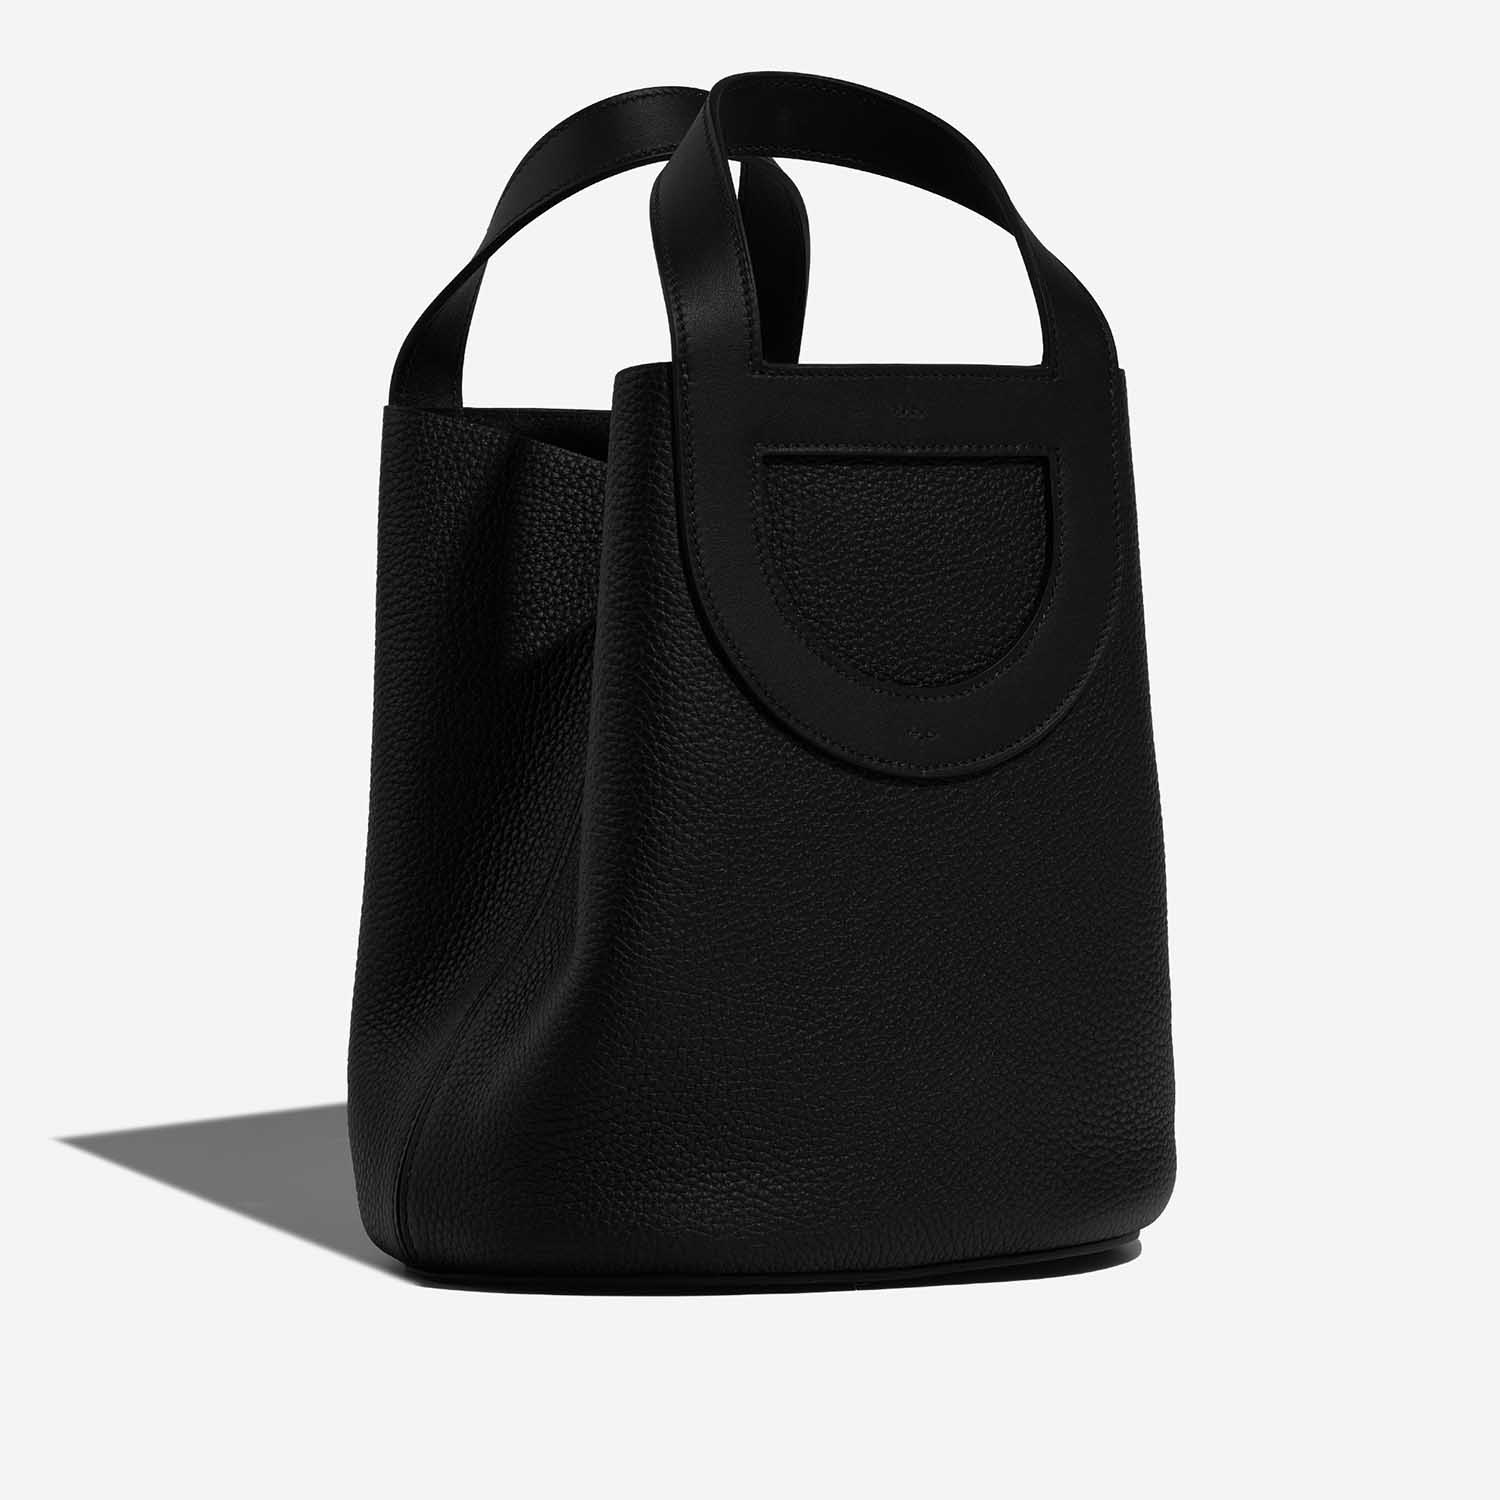 Hermès InTheLoop 23 Schwarz Side Front | Verkaufen Sie Ihre Designer-Tasche auf Saclab.com